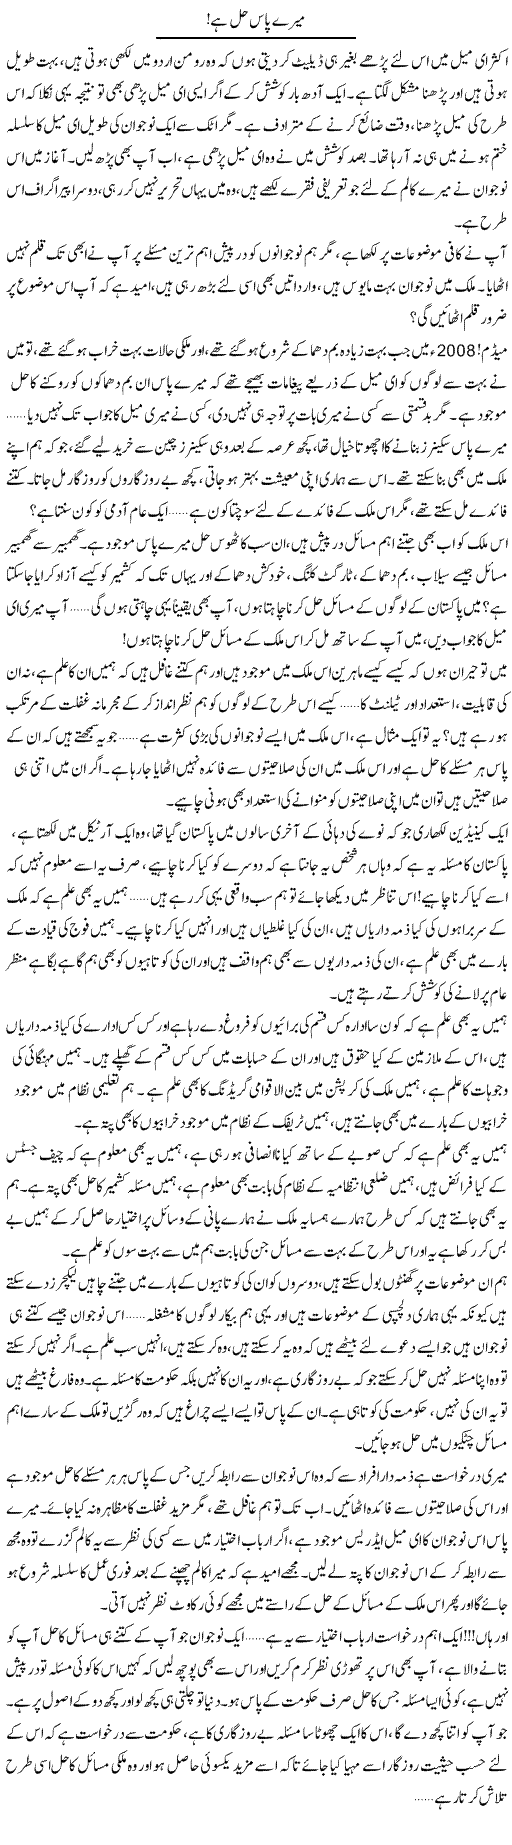 Corruption in pakistan essay in urdu